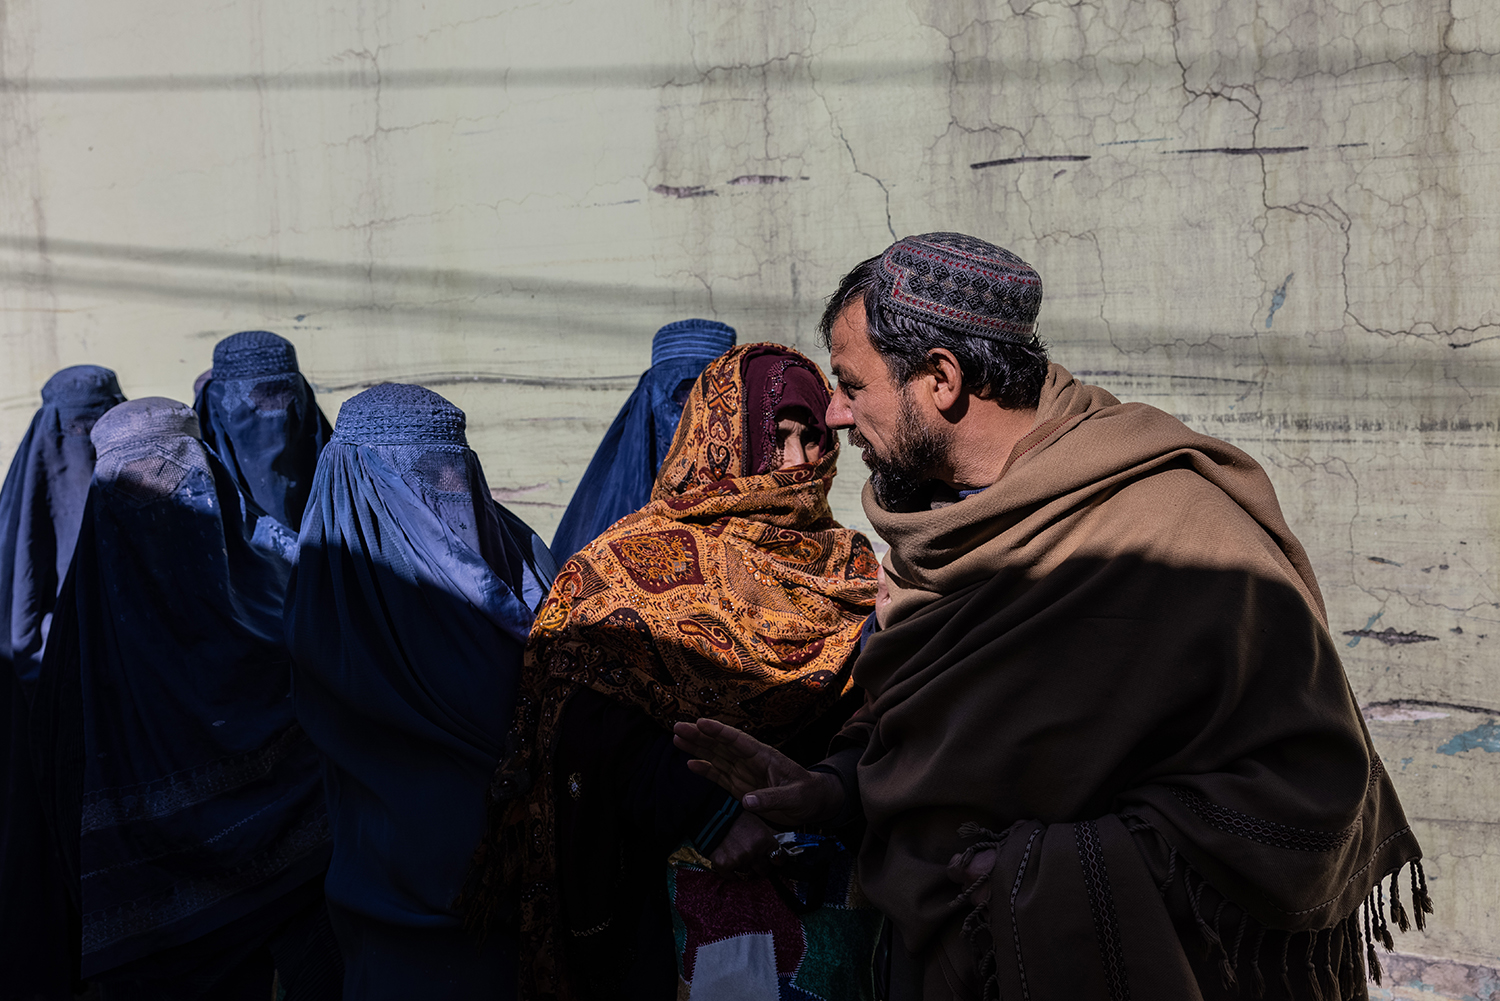 Un hombre pasa junto a un grupo de mujeres con velo en Kabul